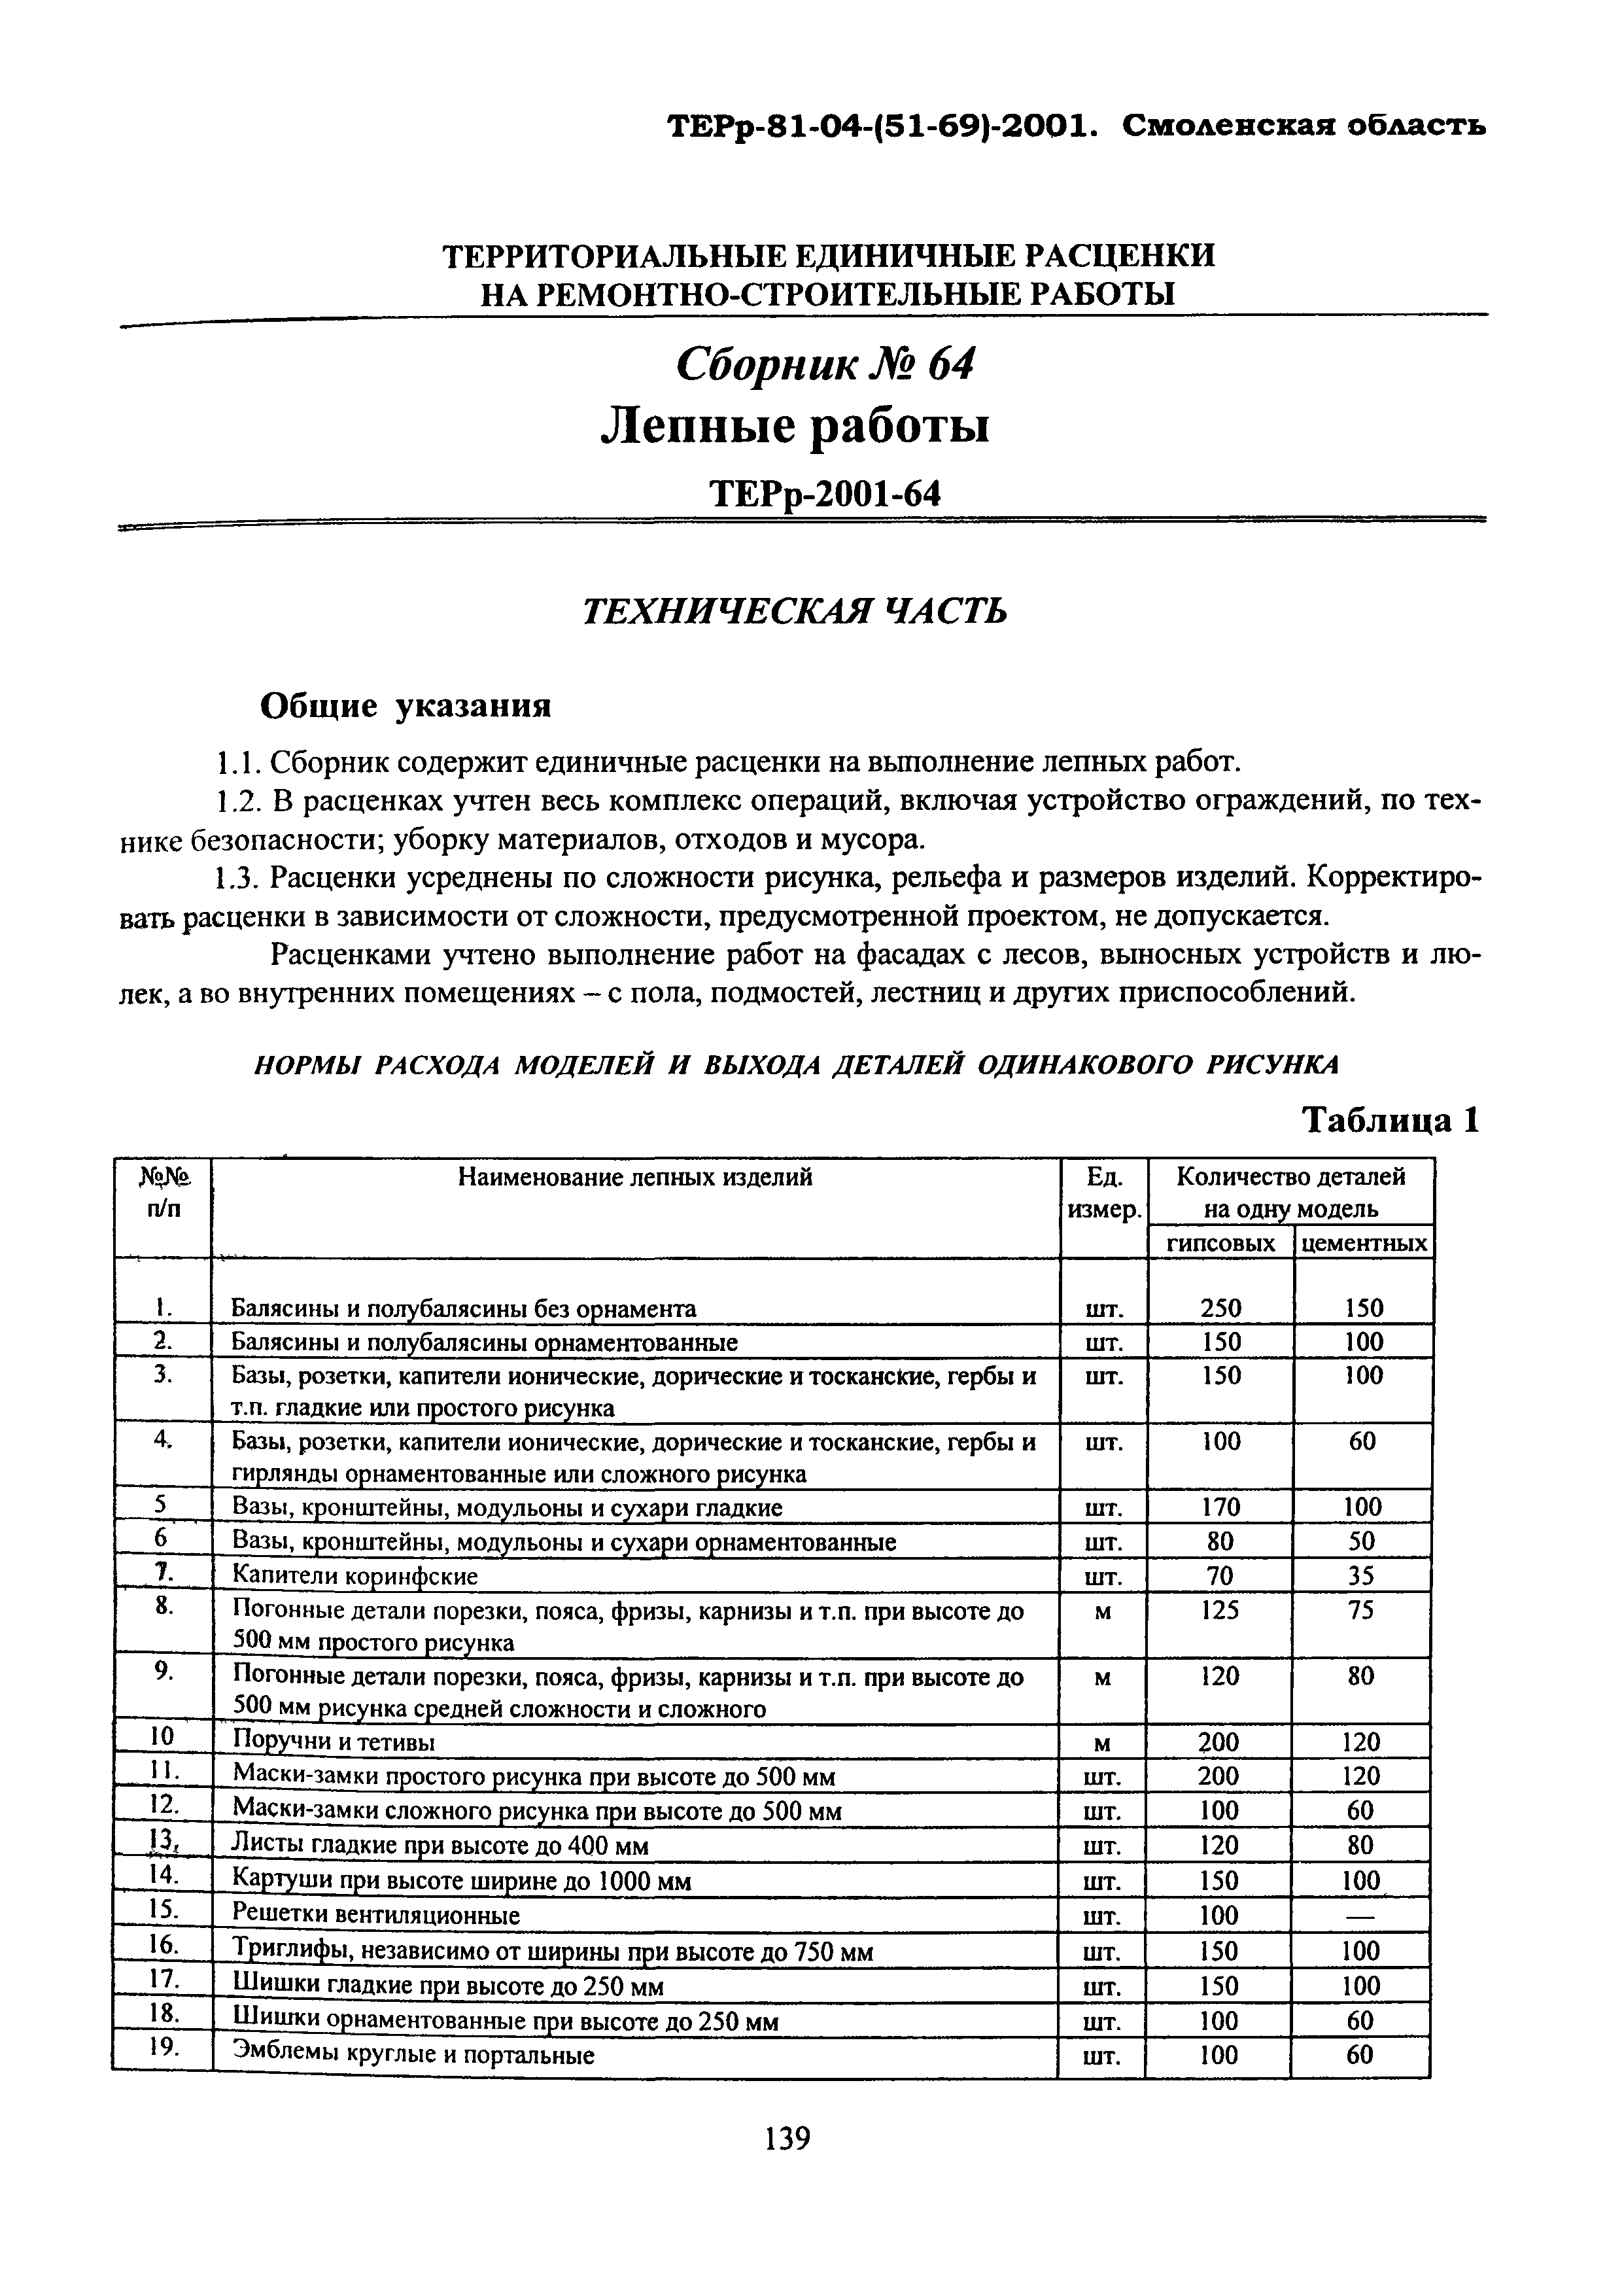 ТЕРр Смоленской области 2001-64